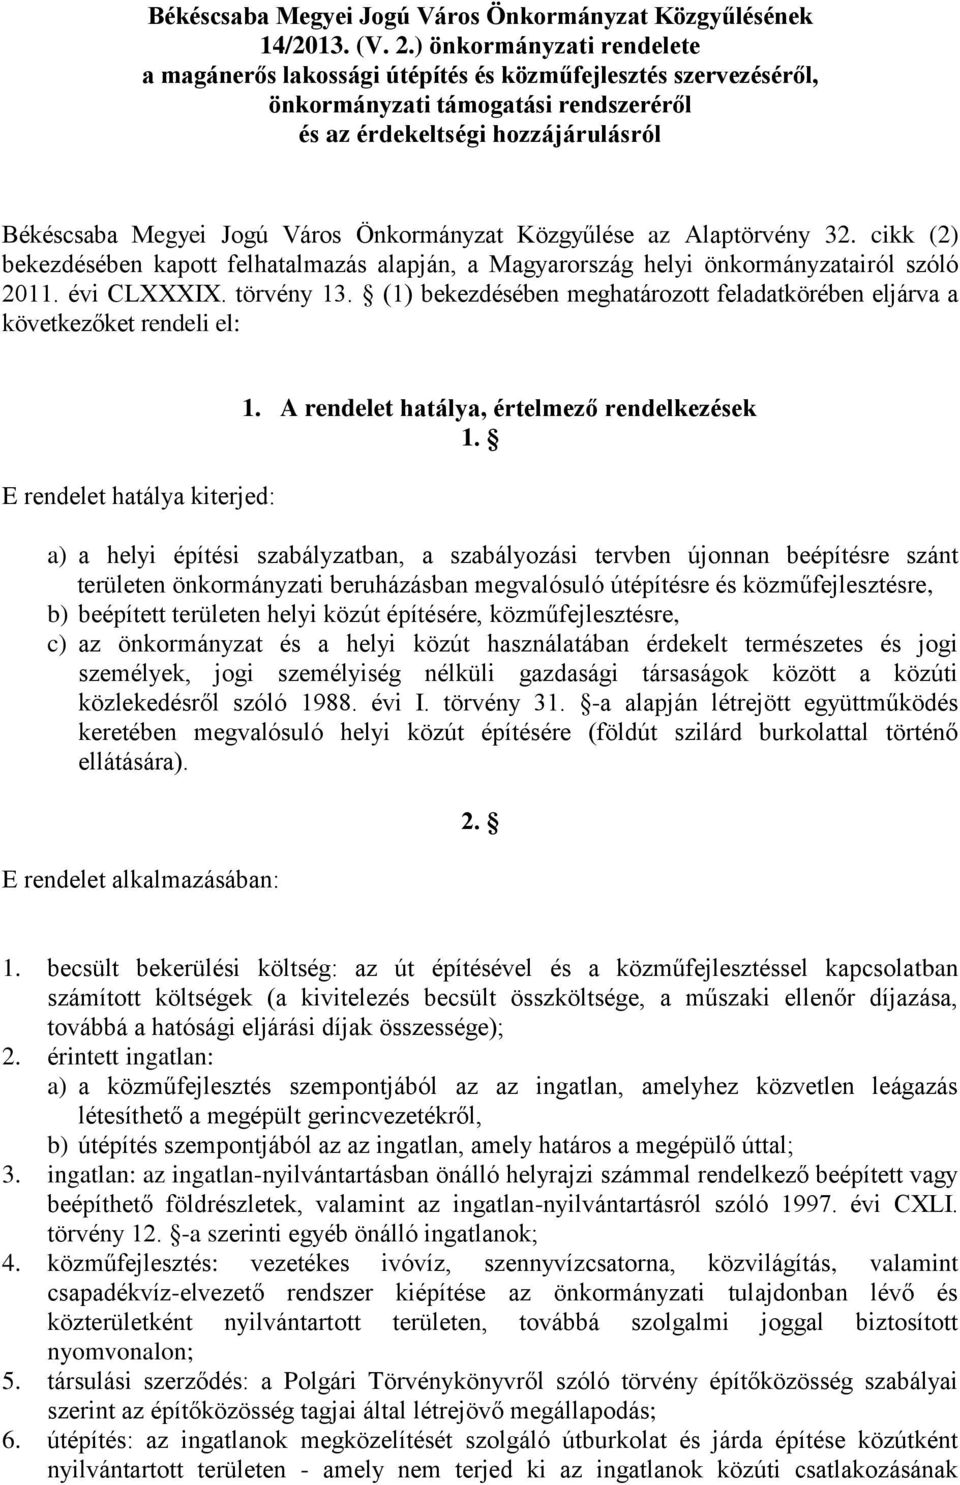 Önkormányzat Közgyűlése az Alaptörvény 32. cikk (2) bekezdésében kapott felhatalmazás alapján, a Magyarország helyi önkormányzatairól szóló 2011. évi CLXXXIX. törvény 13.